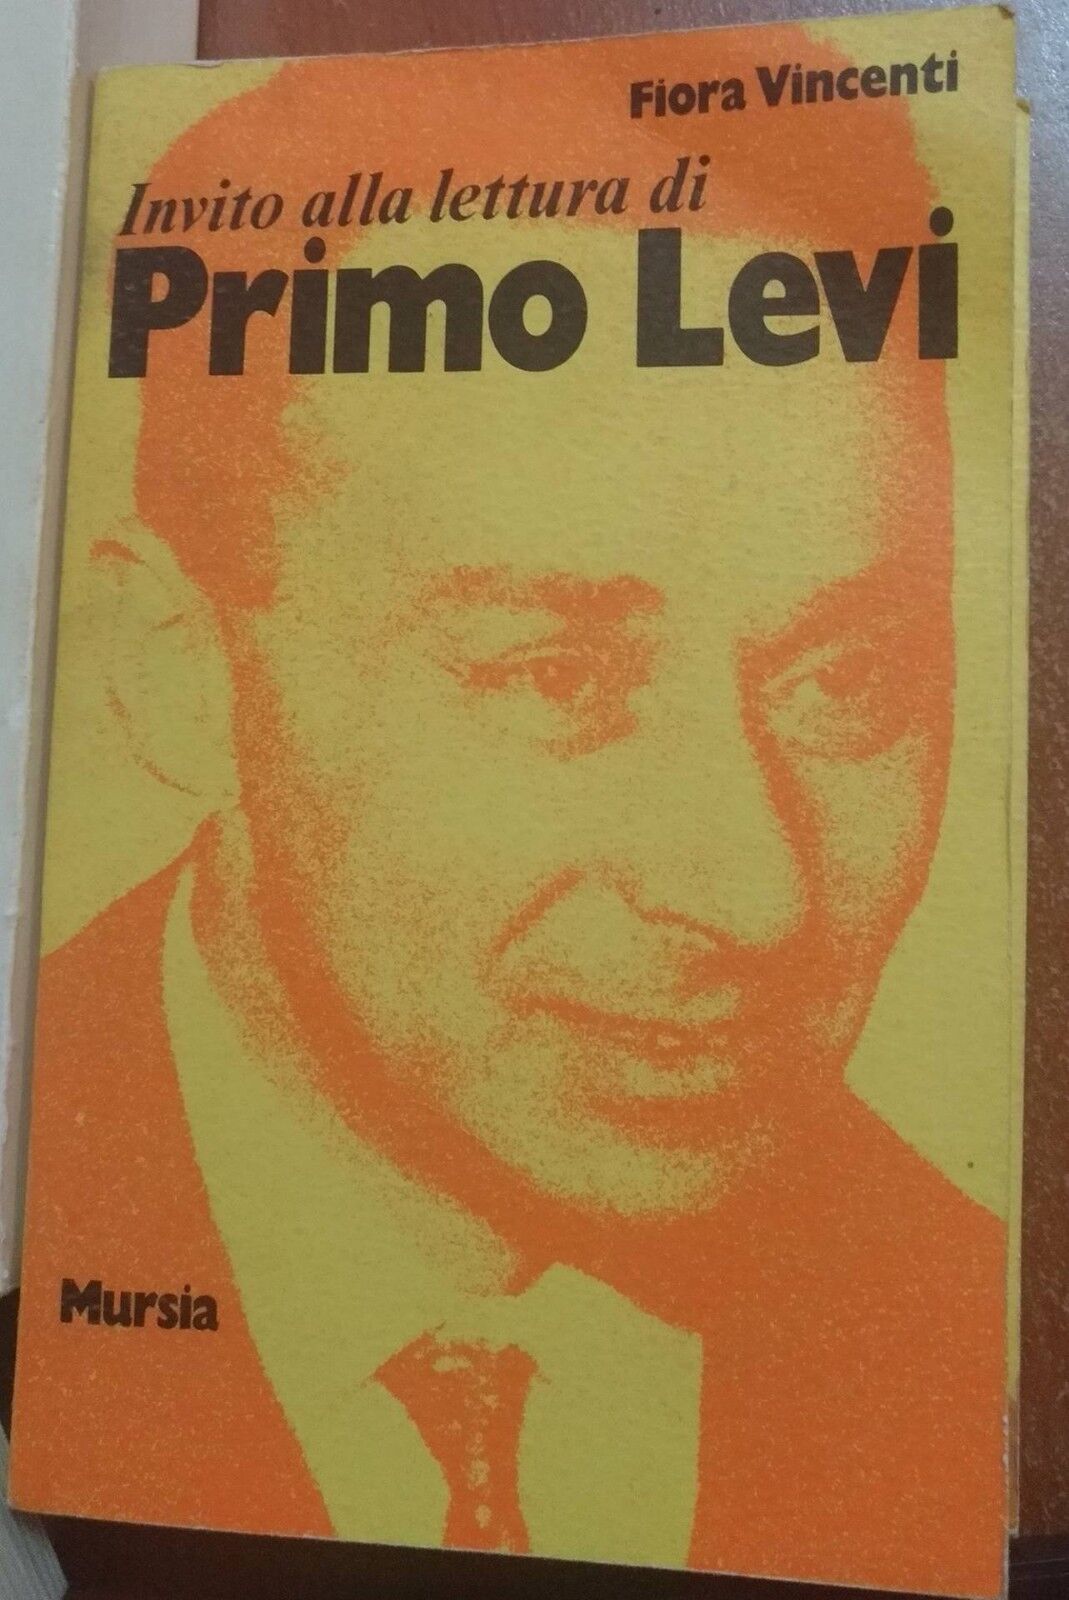 Invito alla lettura di Primo Levi, Fiora Vincenti,1976, Mursia Editore - S